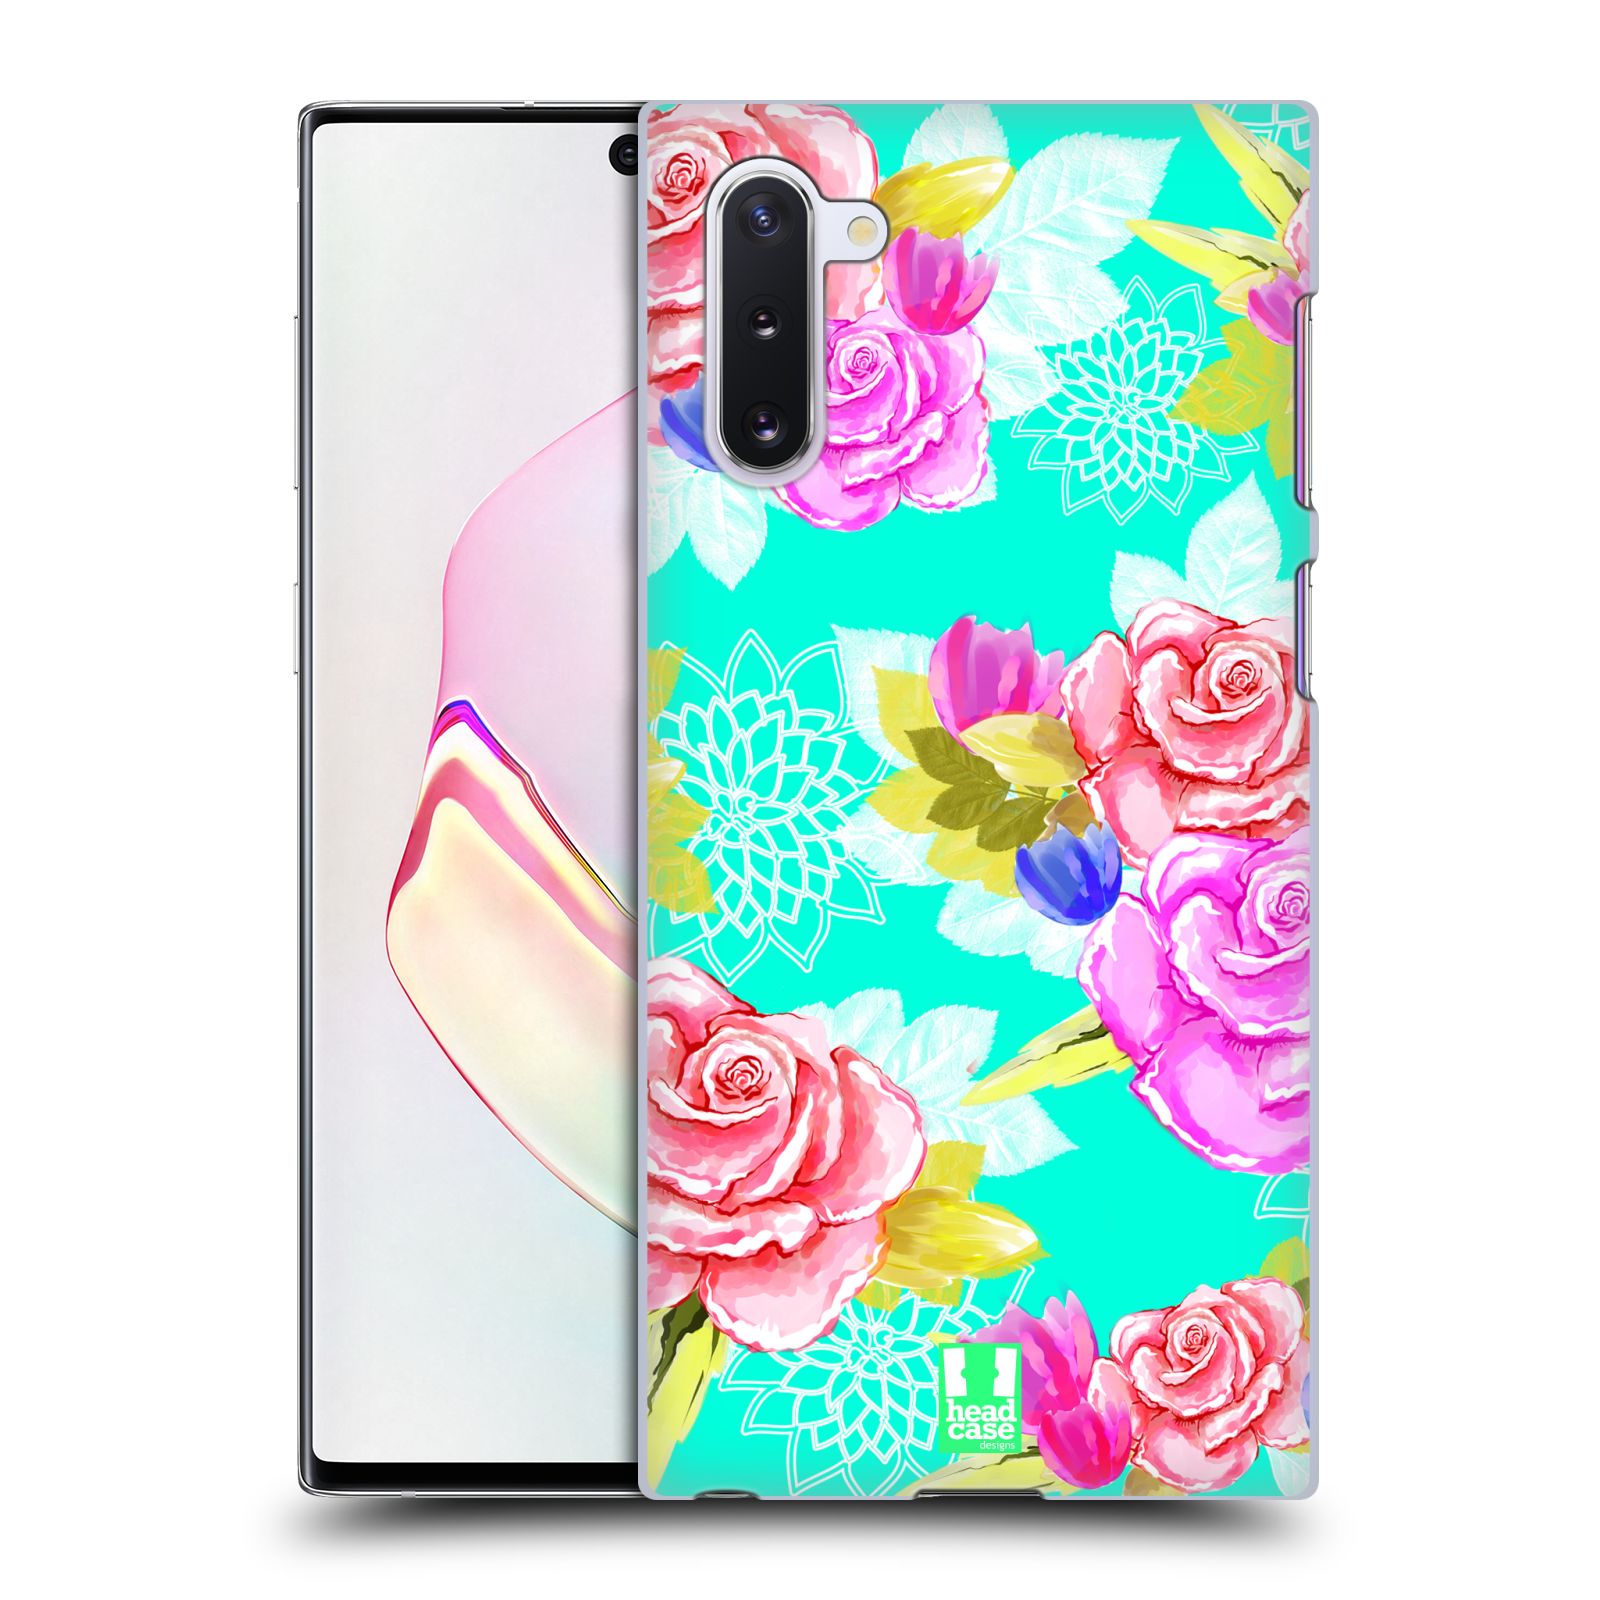 Pouzdro na mobil Samsung Galaxy Note 10 - HEAD CASE - vzor Malované květiny barevné AQUA MODRÁ